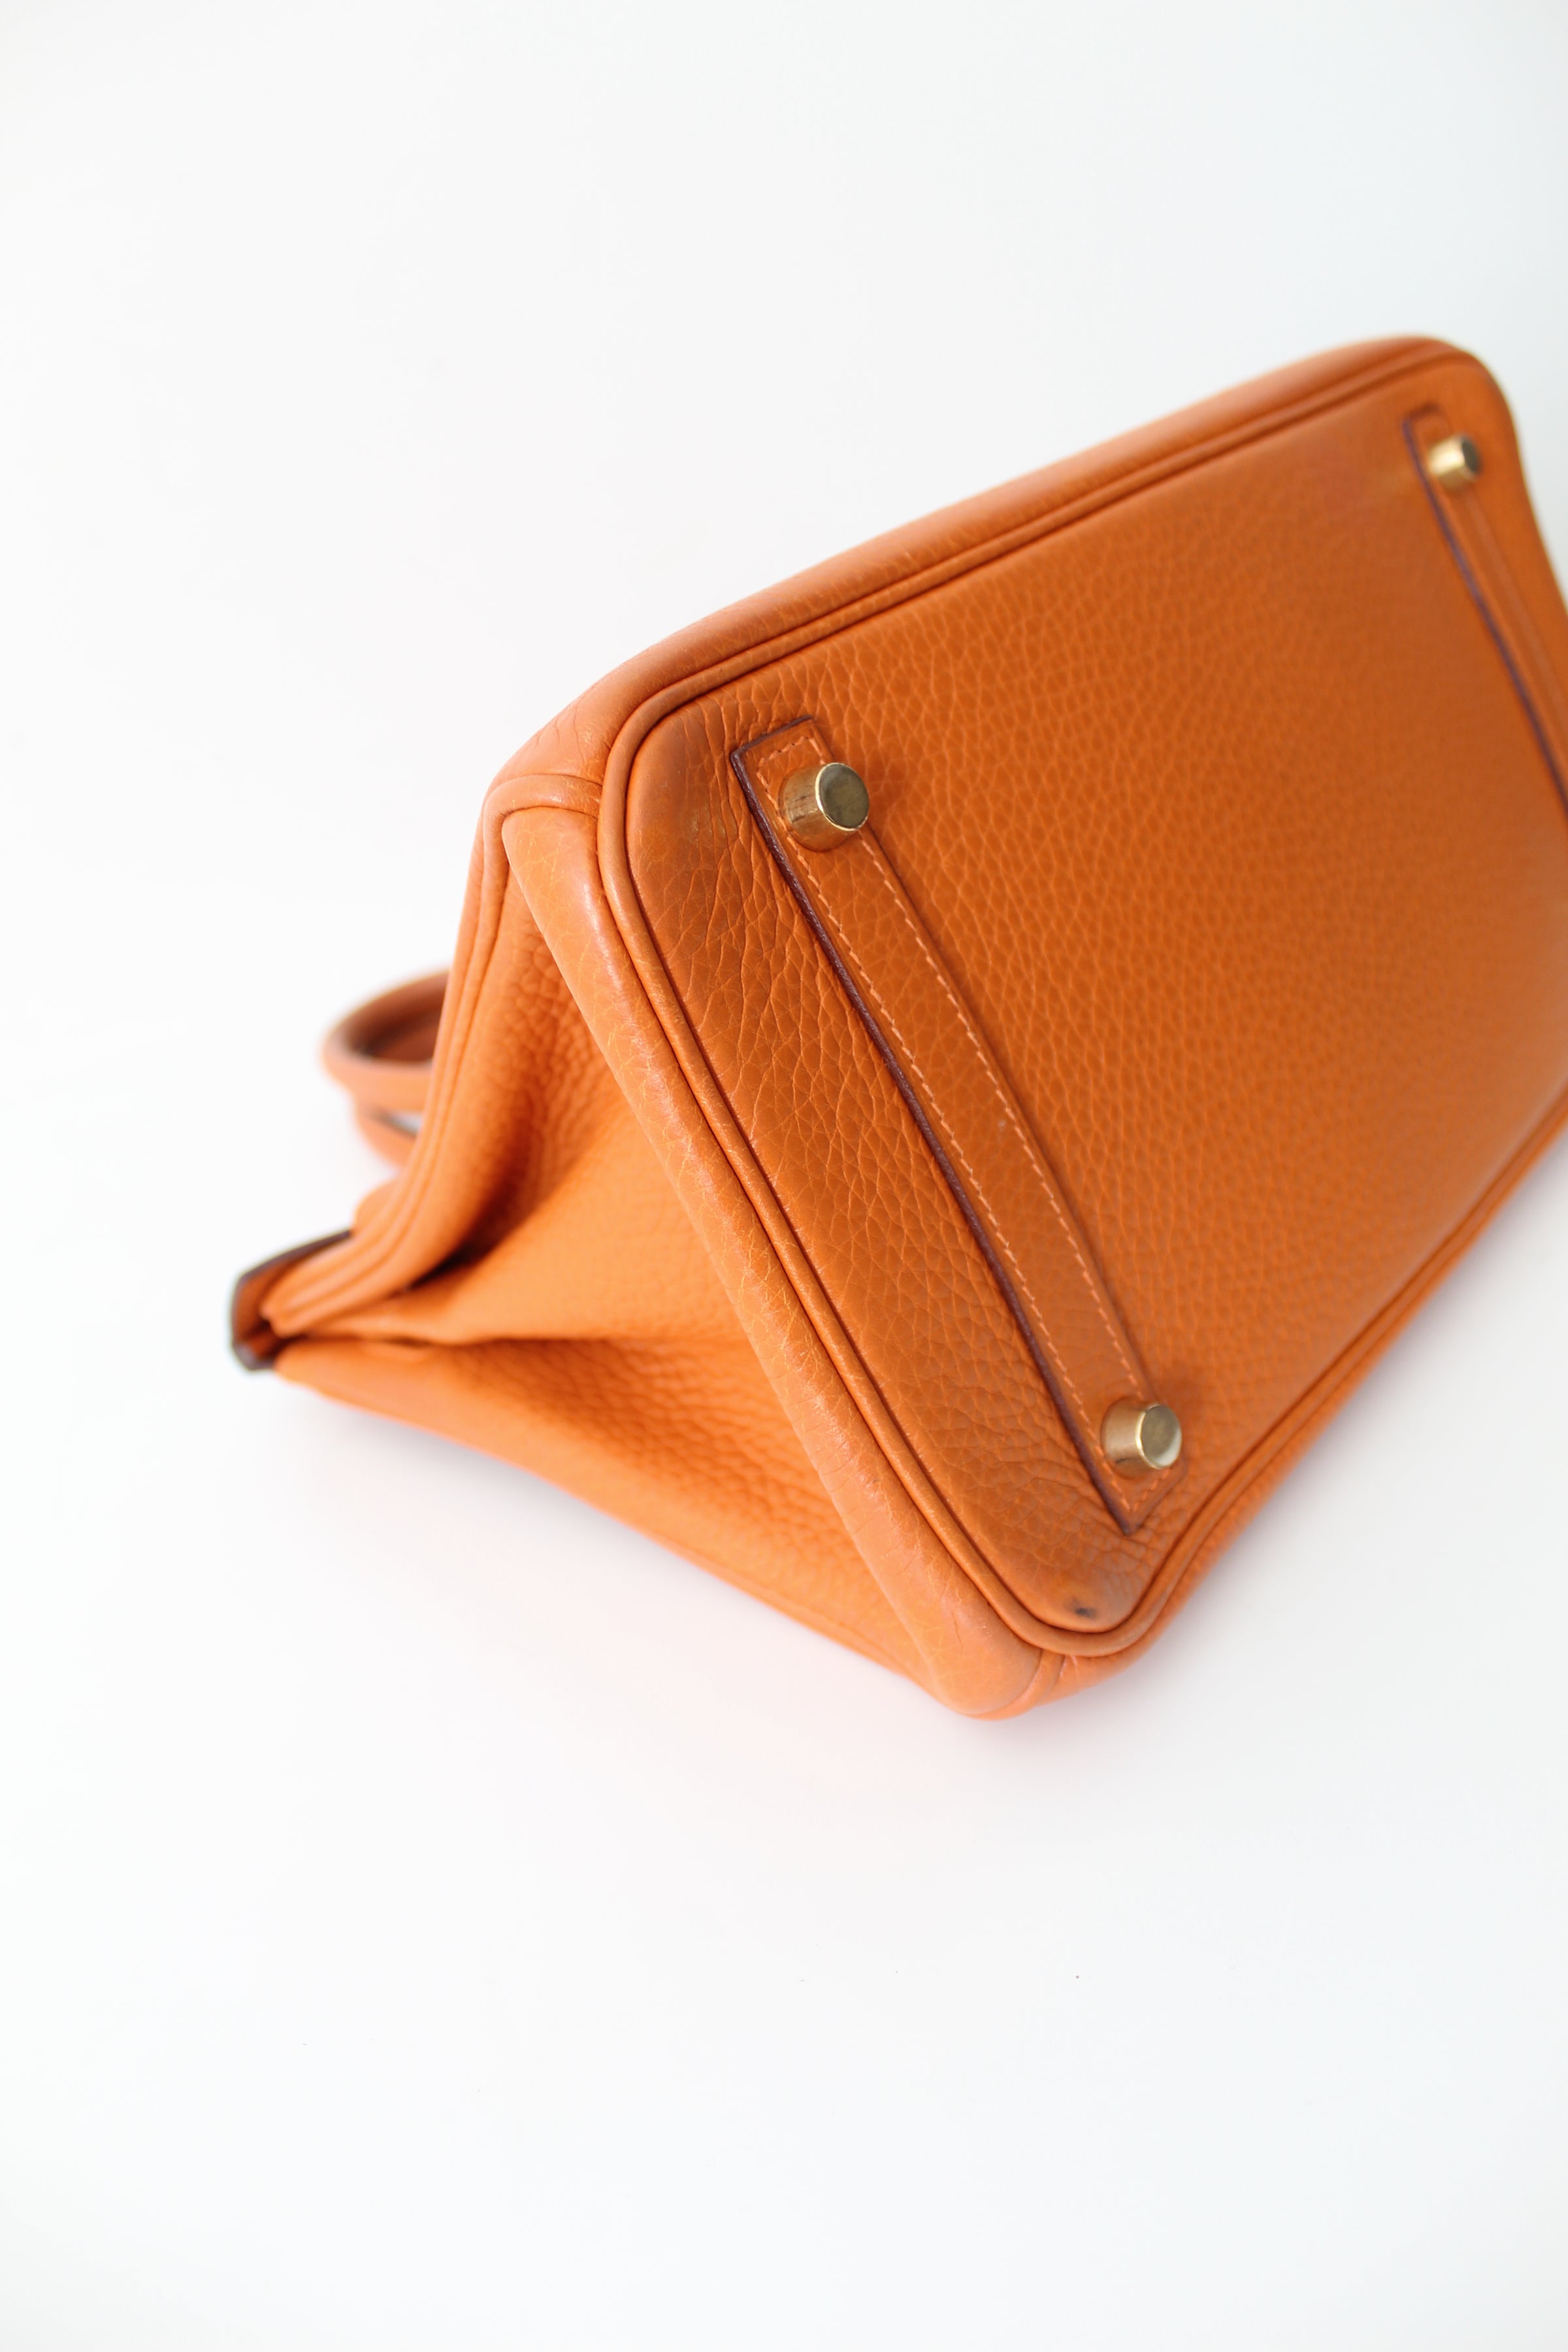 Hermes Handbag Birkin 30, Orange  CWS - Asset Management and Sales